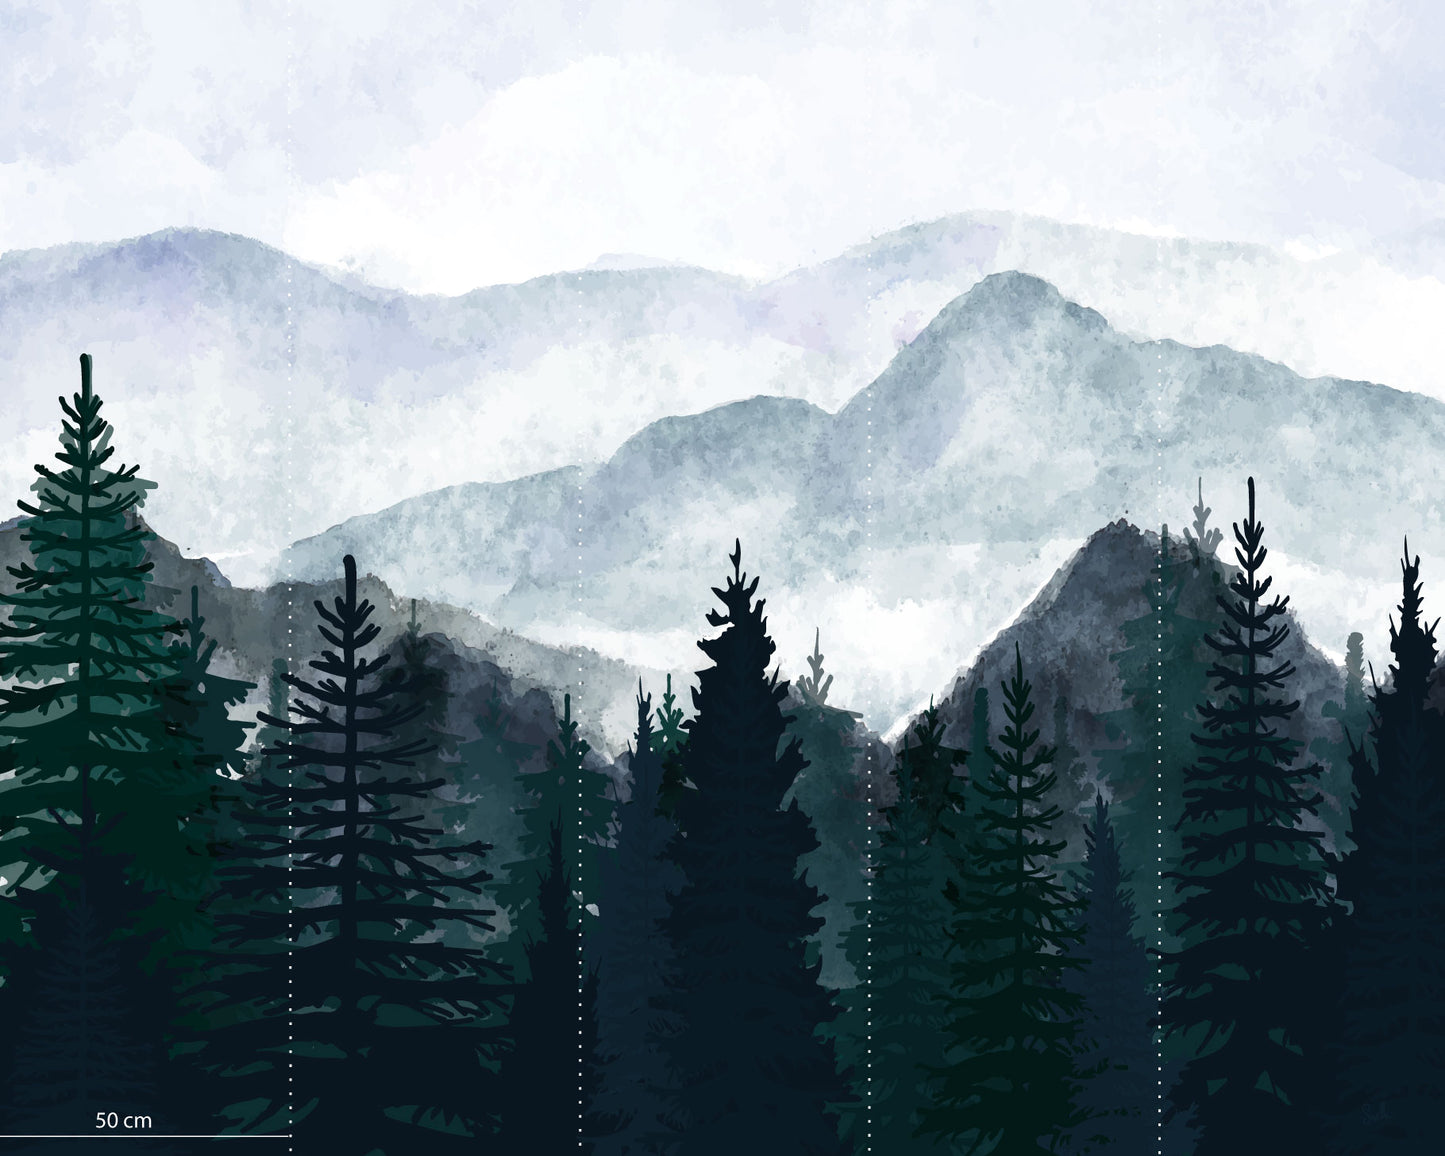 Papier-peint panoramique "La Montagne"